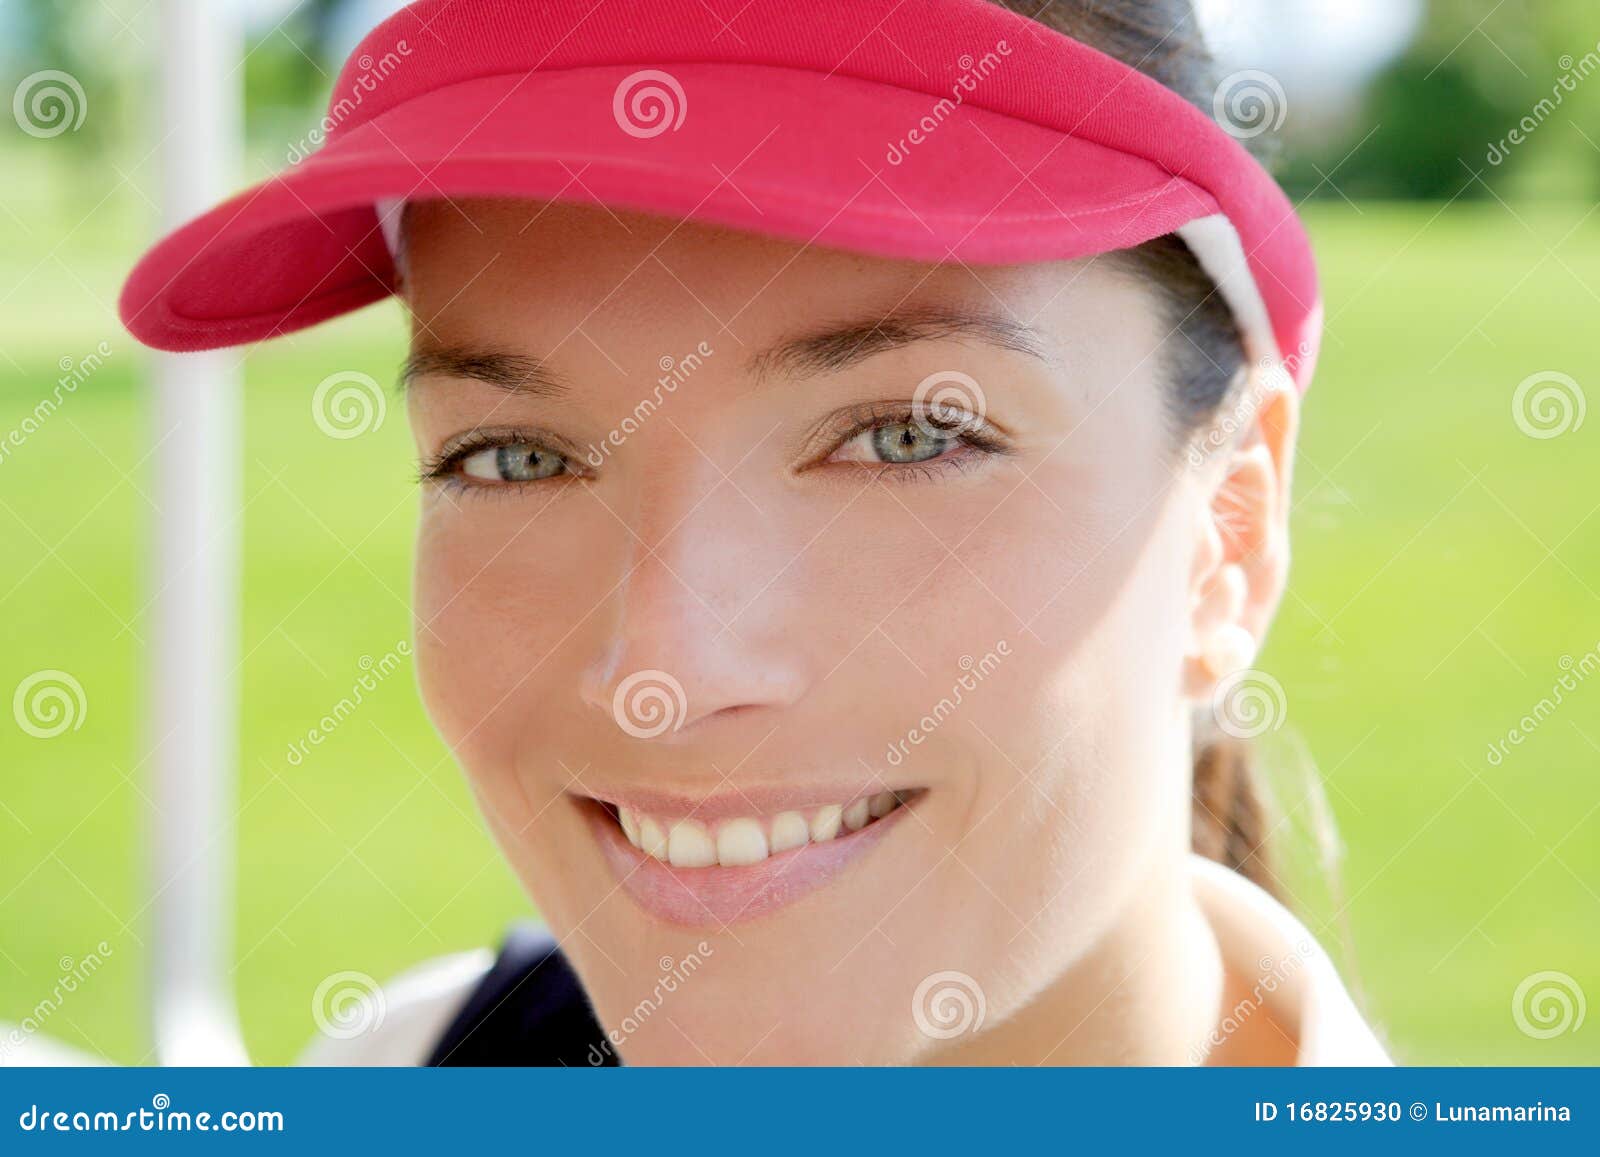 sport woman closeup face sun visor cap